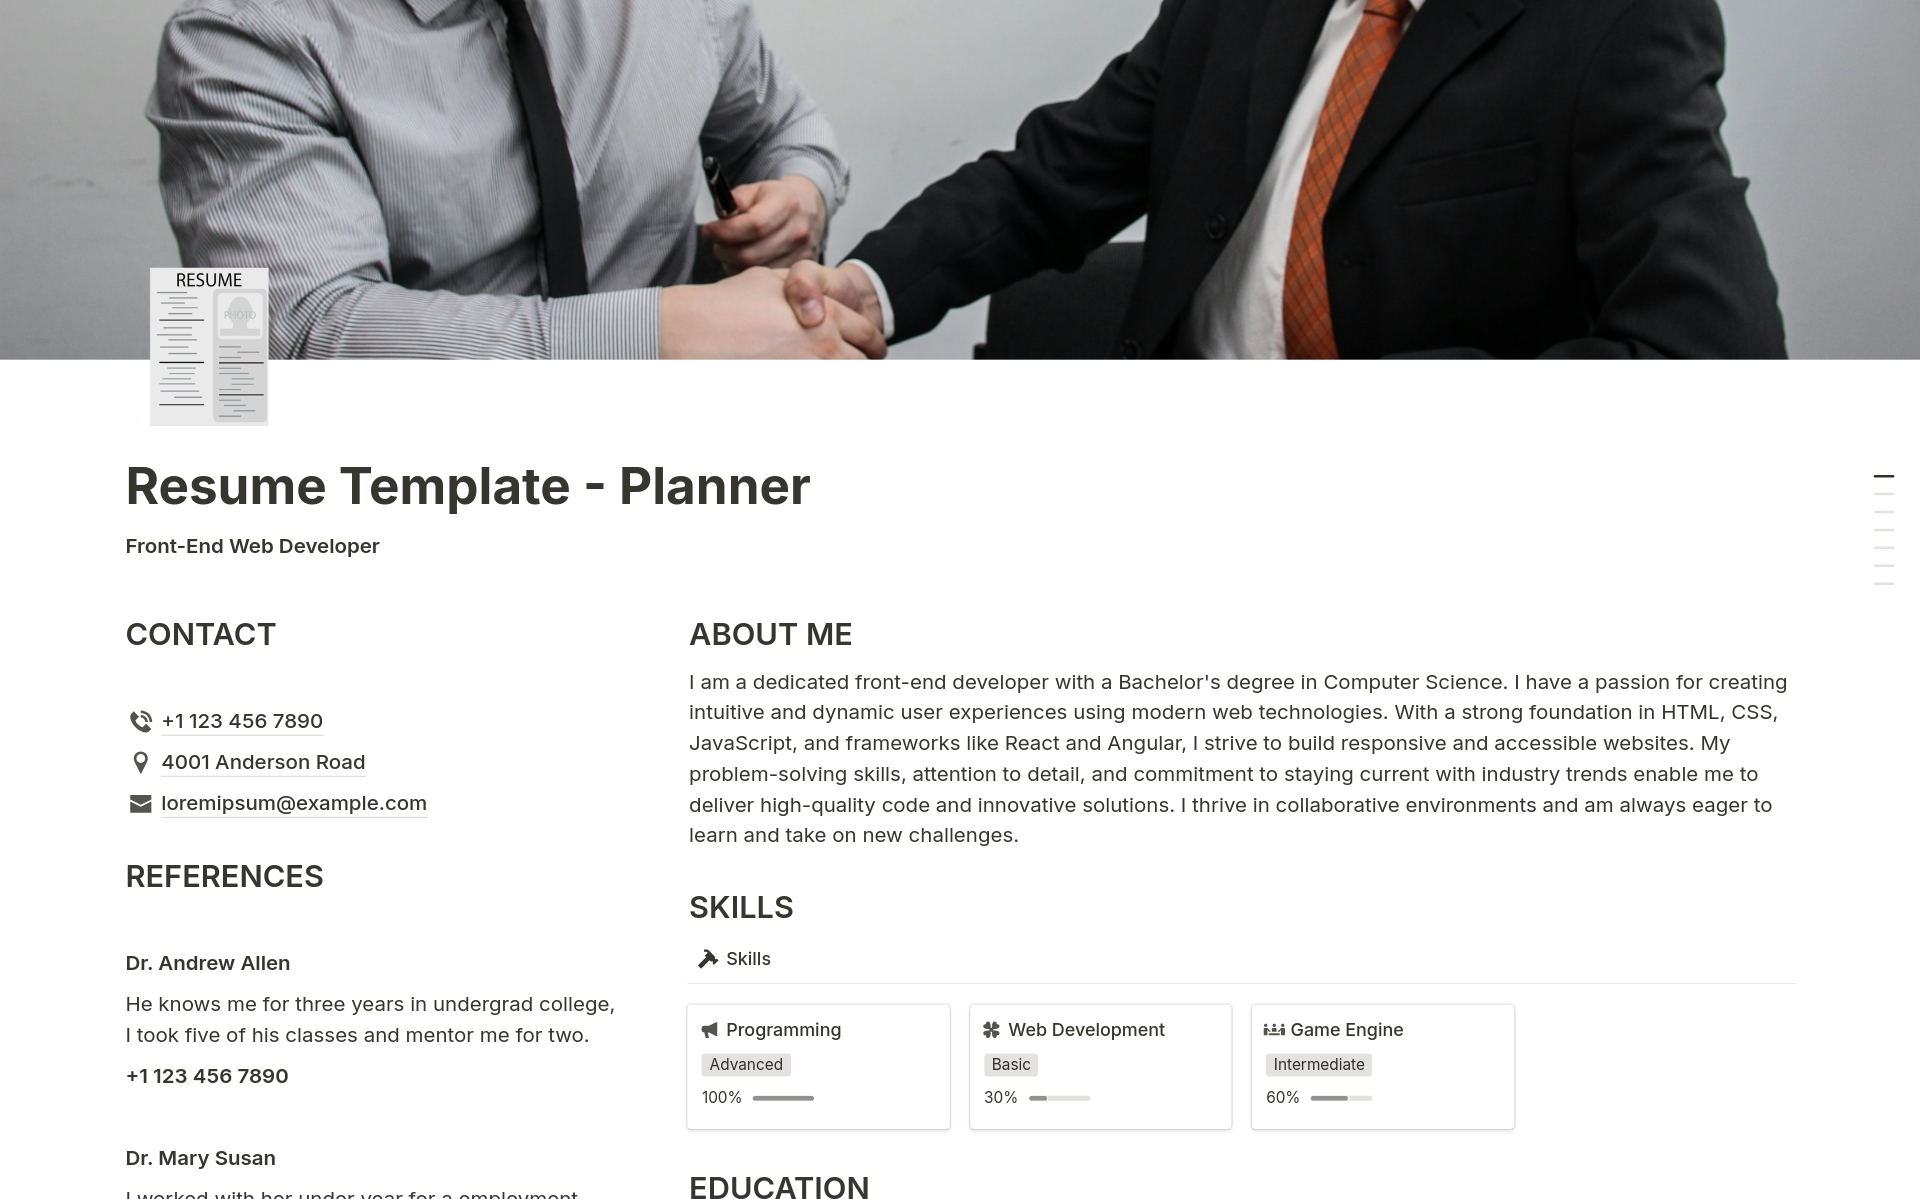 Resume - Plannerのテンプレートのプレビュー